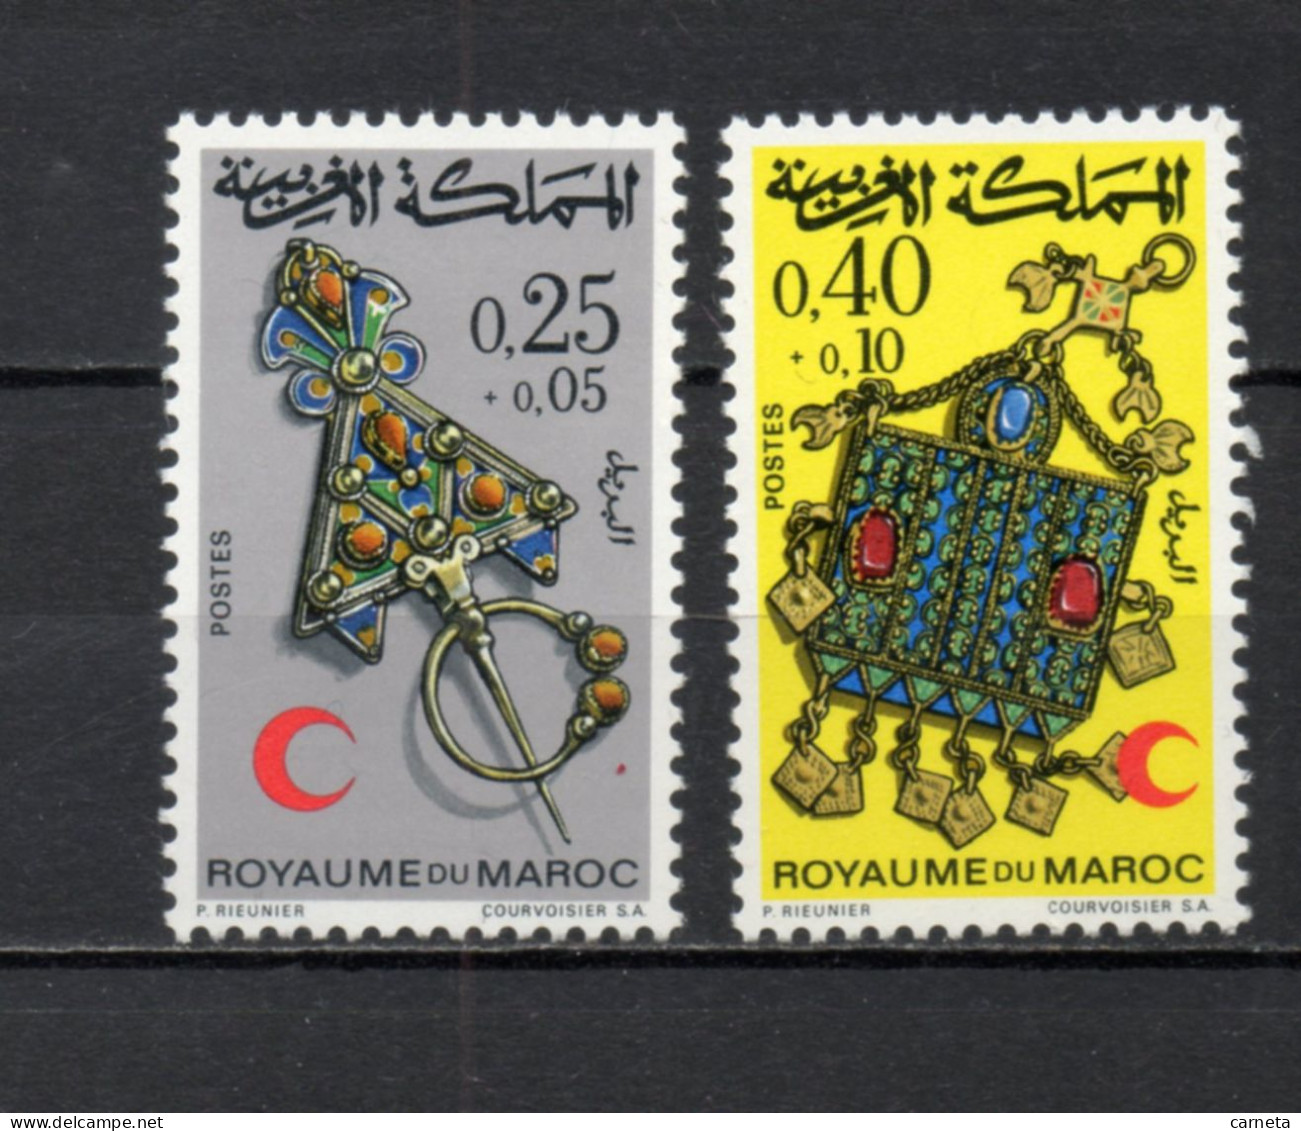 MAROC N°  616 + 617     NEUFS SANS CHARNIERE  COTE 4.05€    CROISSANT ROUGE - Maroc (1956-...)